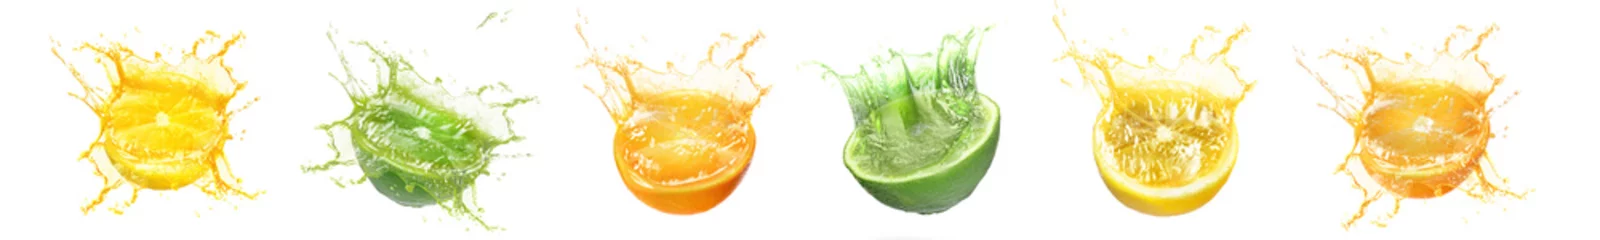 Rugzak Fresh citrus fruits with splashing juice on white background, set © New Africa